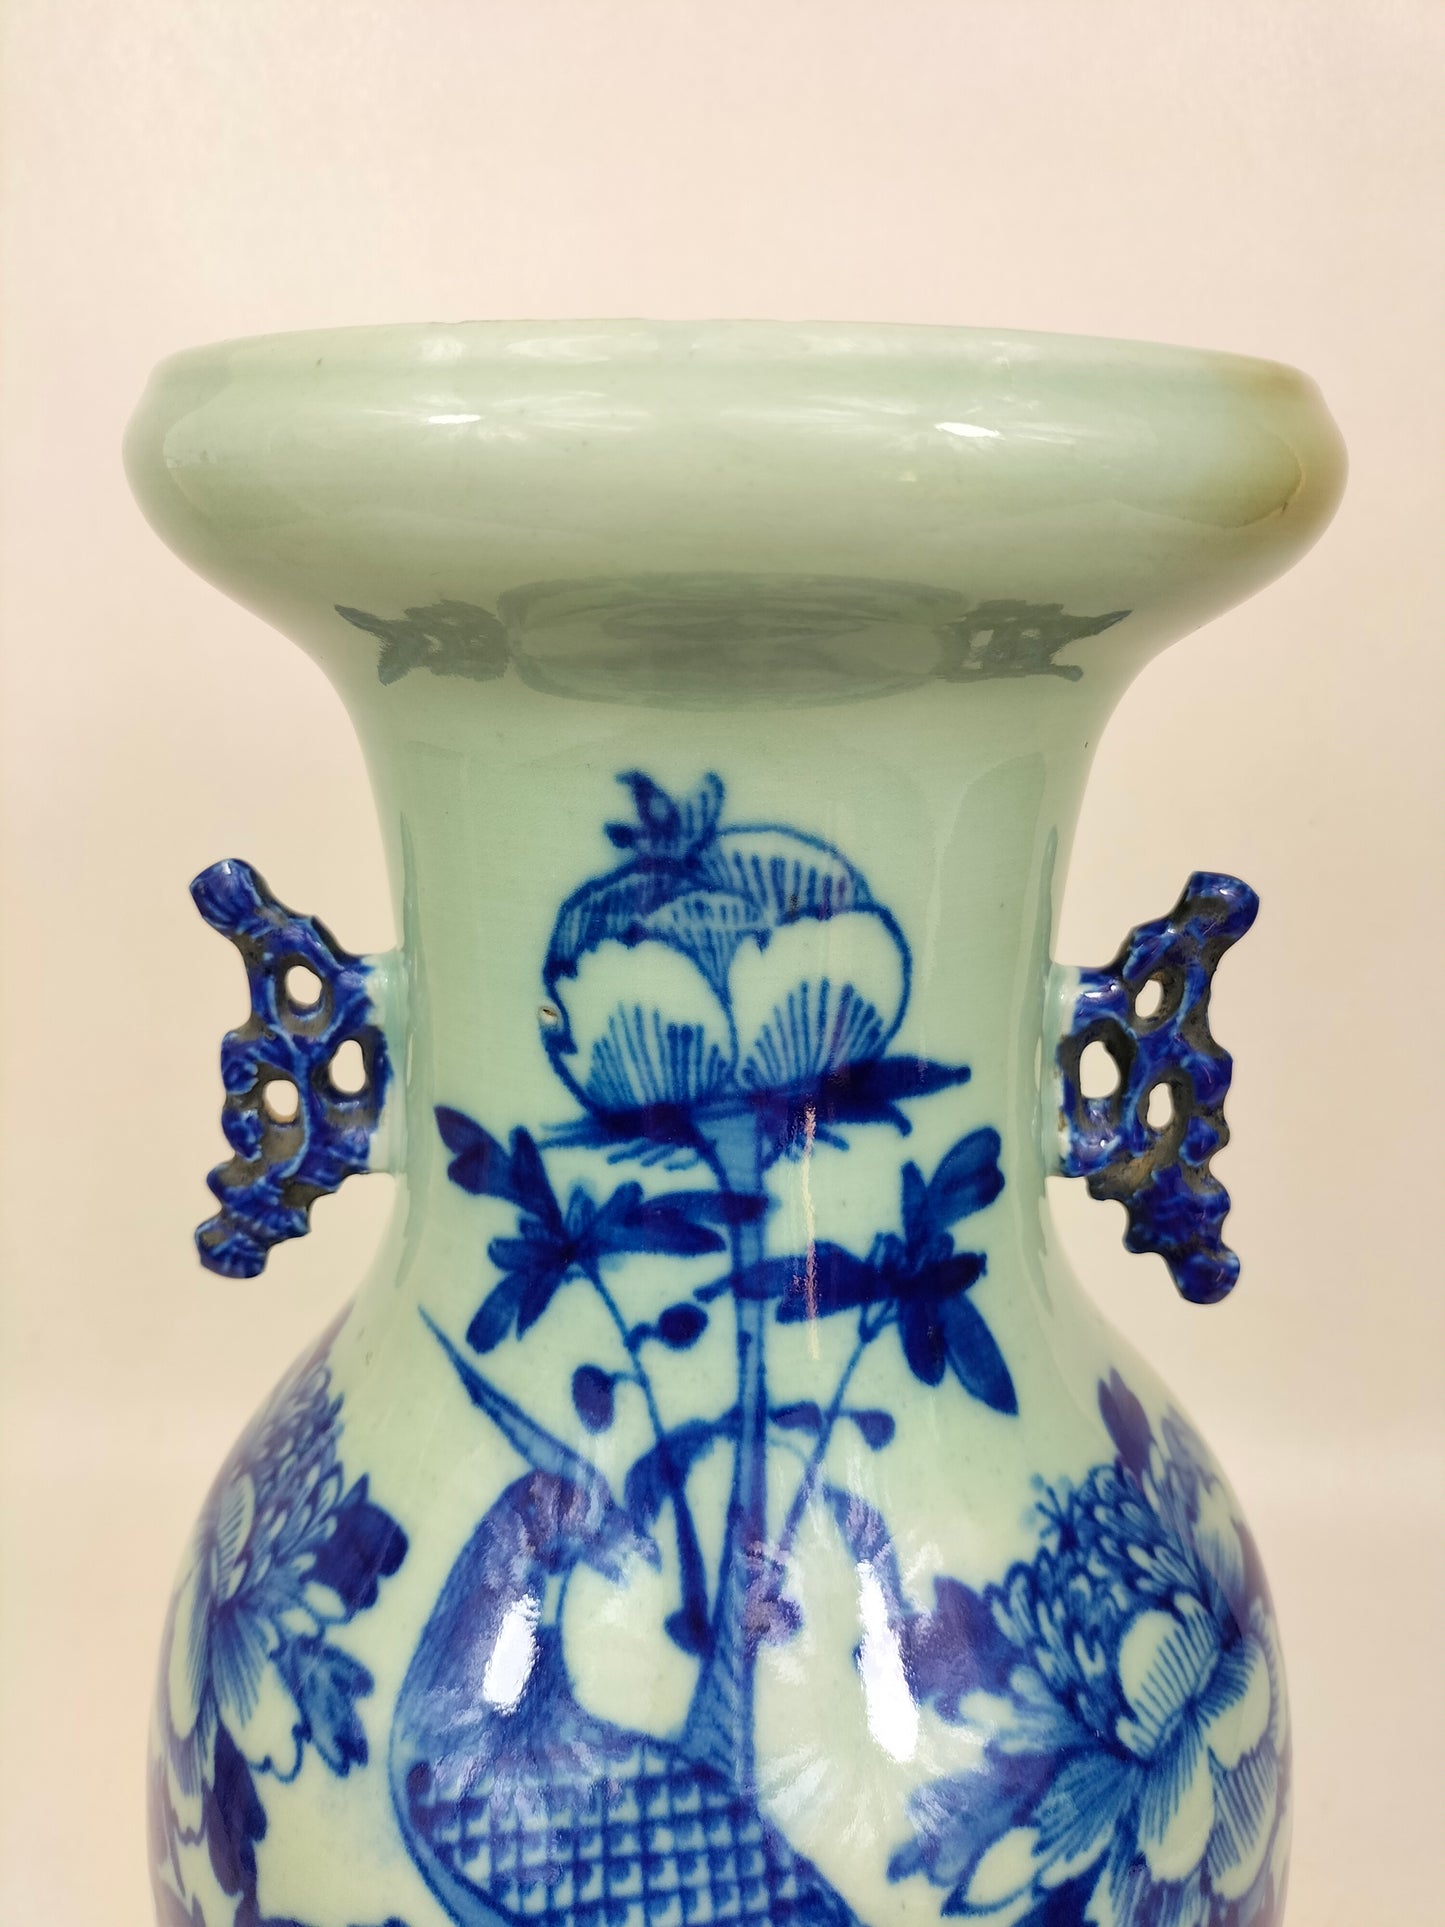 古董中国青瓷彩色花瓶//清朝 - 19 世纪